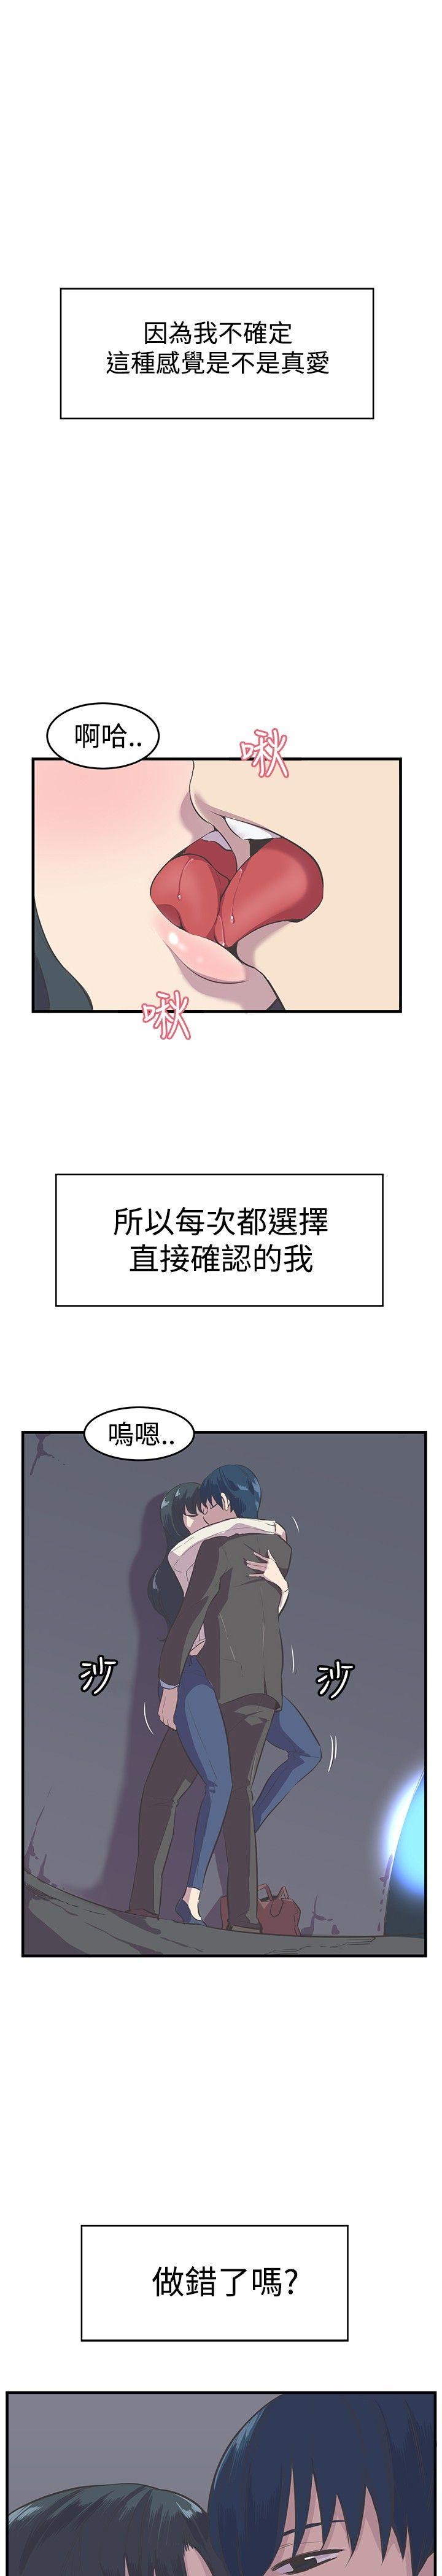 青春男女(完结)  第11话 漫画图片1.jpg